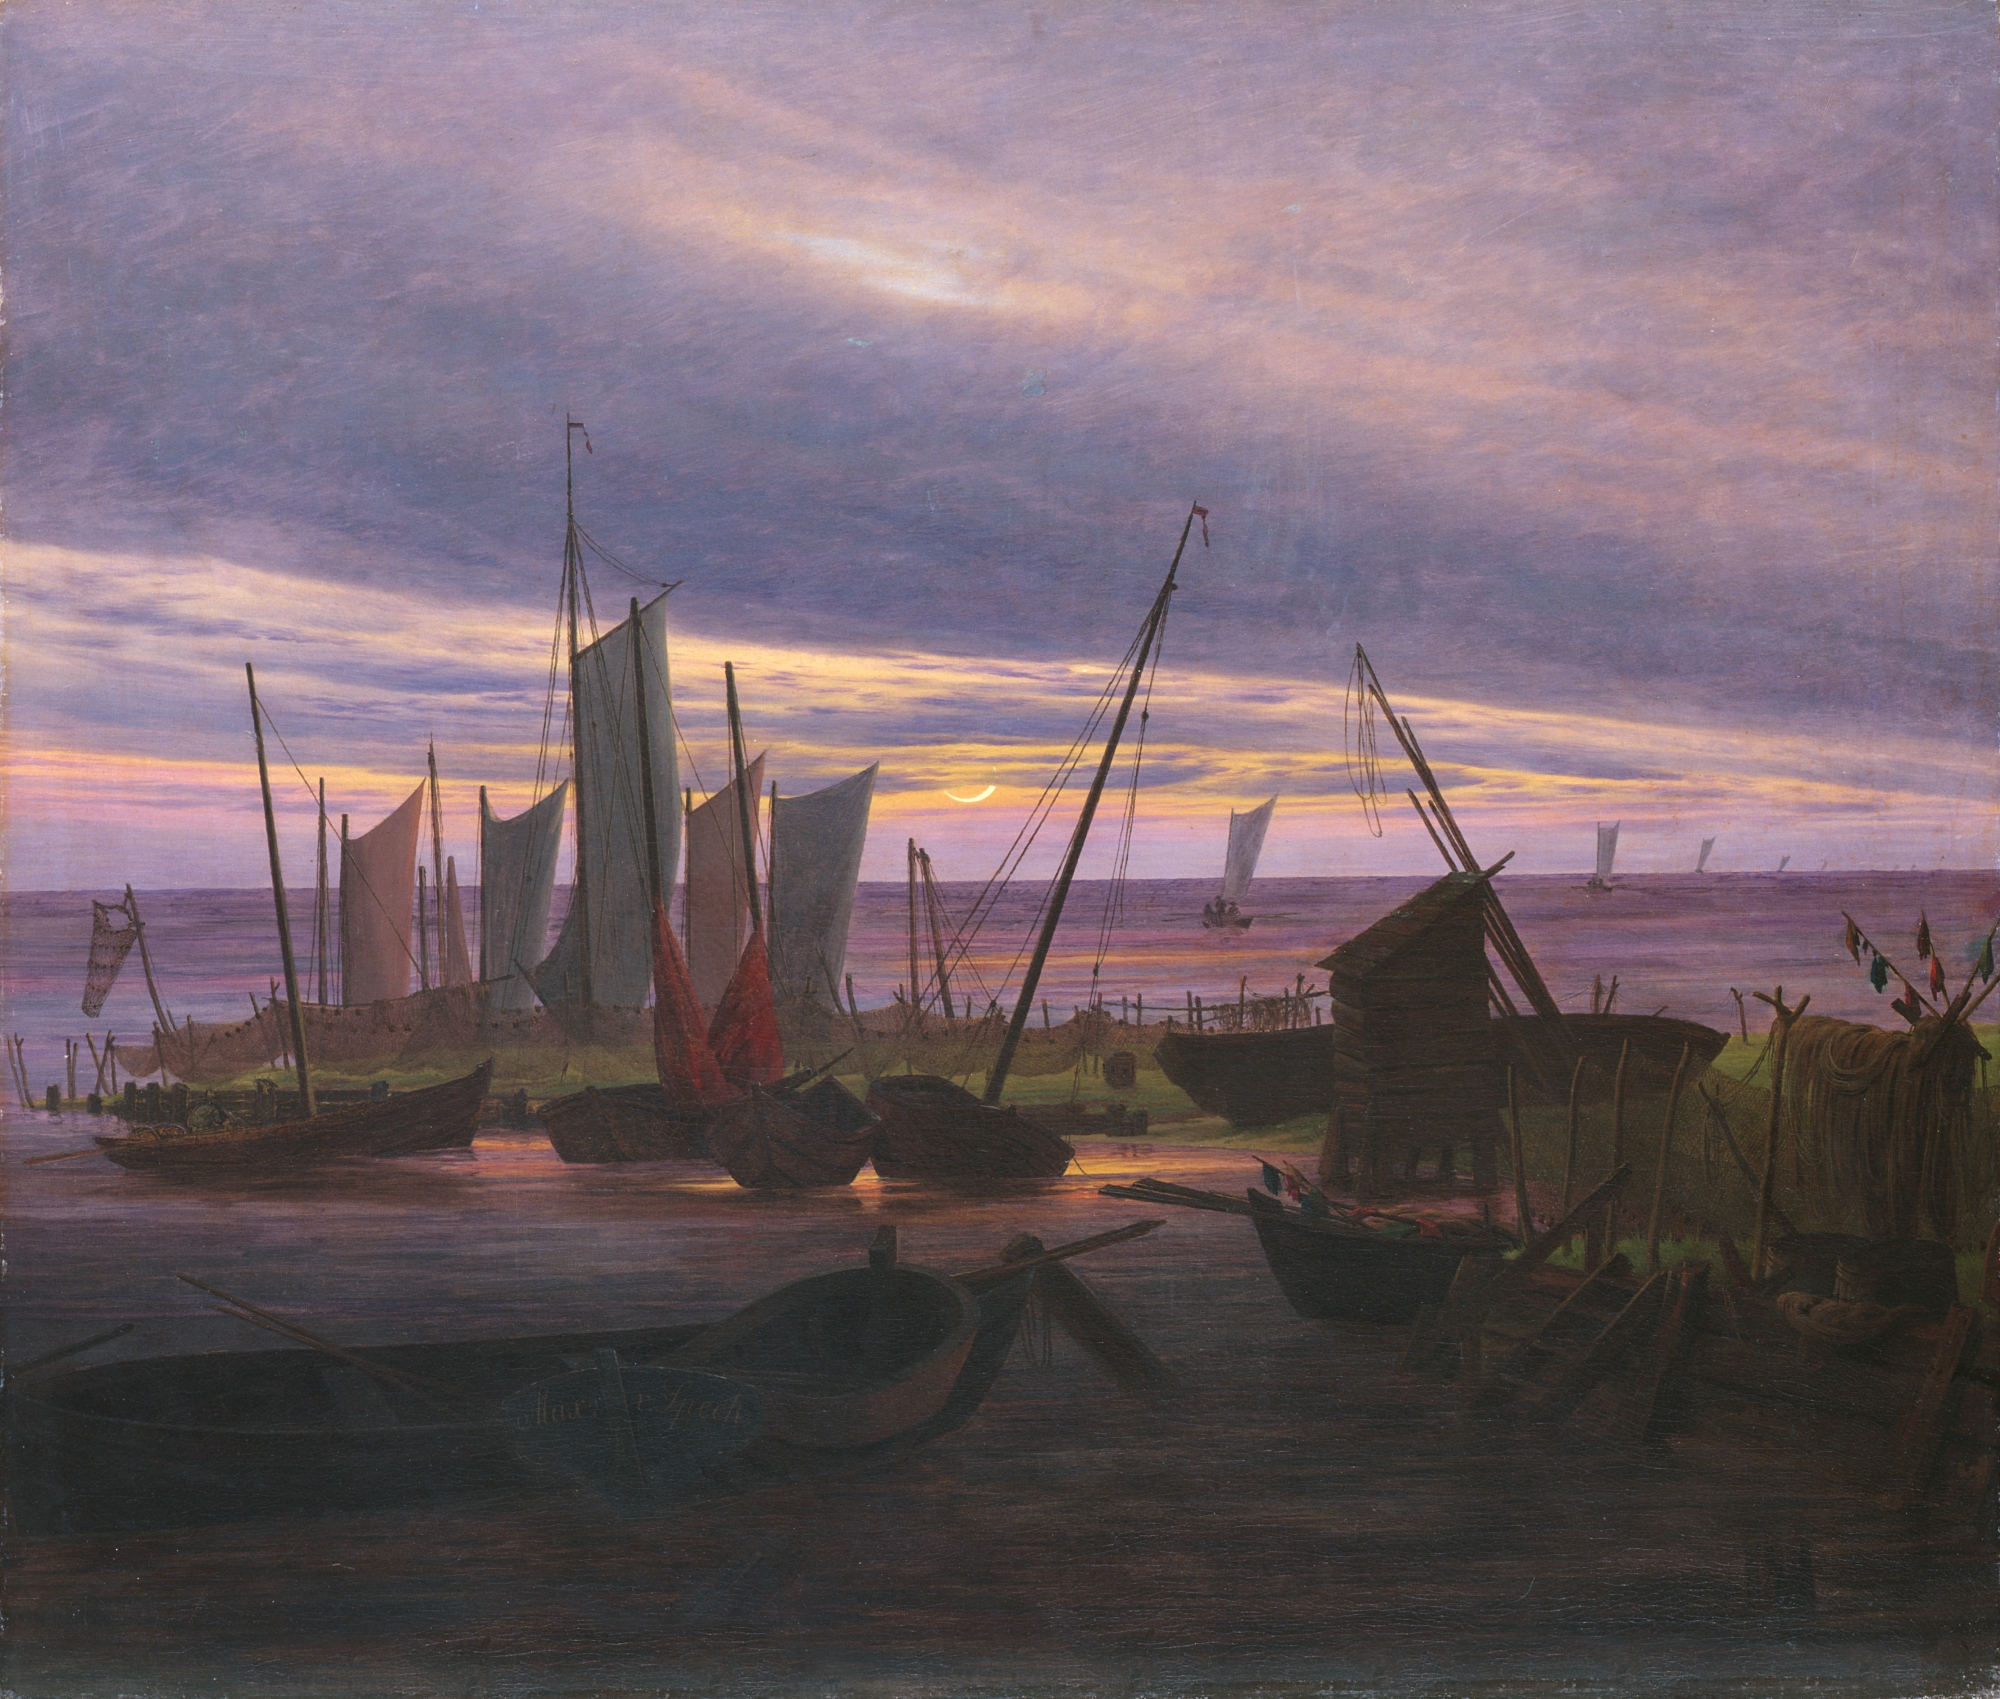 Barcos en el puerto por la tarde by Caspar David Friedrich - 1828 - 76,5 x 88,2 cm Colecciones estatales de arte de Dresde